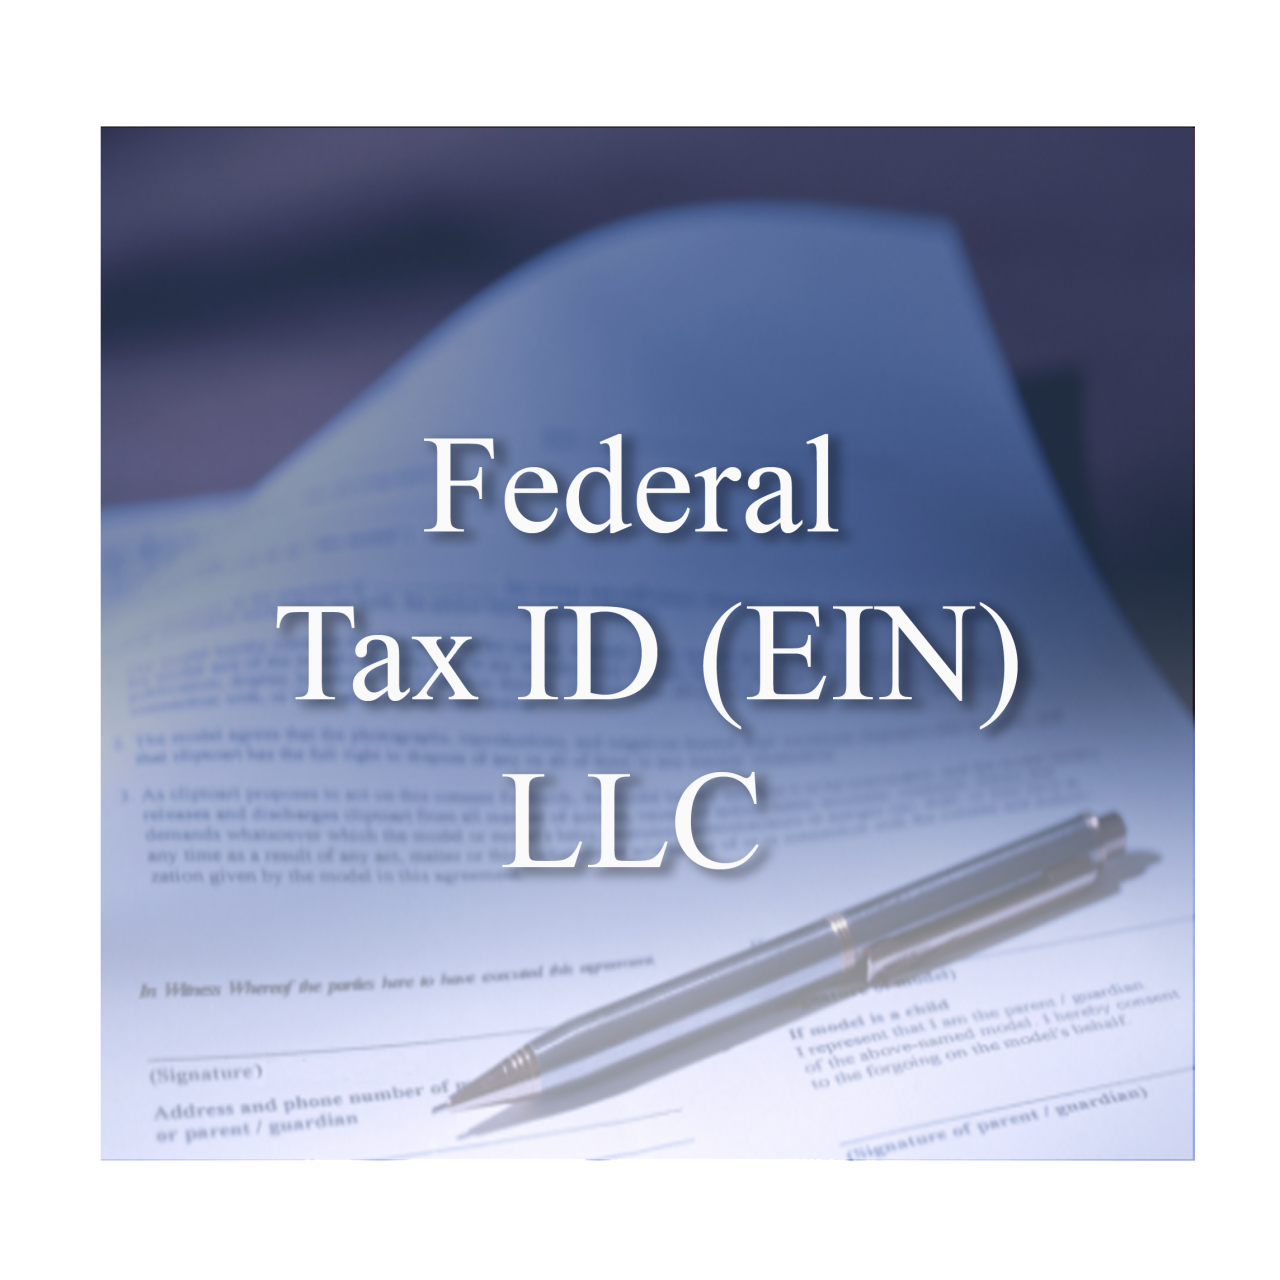 Federal Tax Id Ein Llc  33392.1374277628.1280.1280 ?c=2